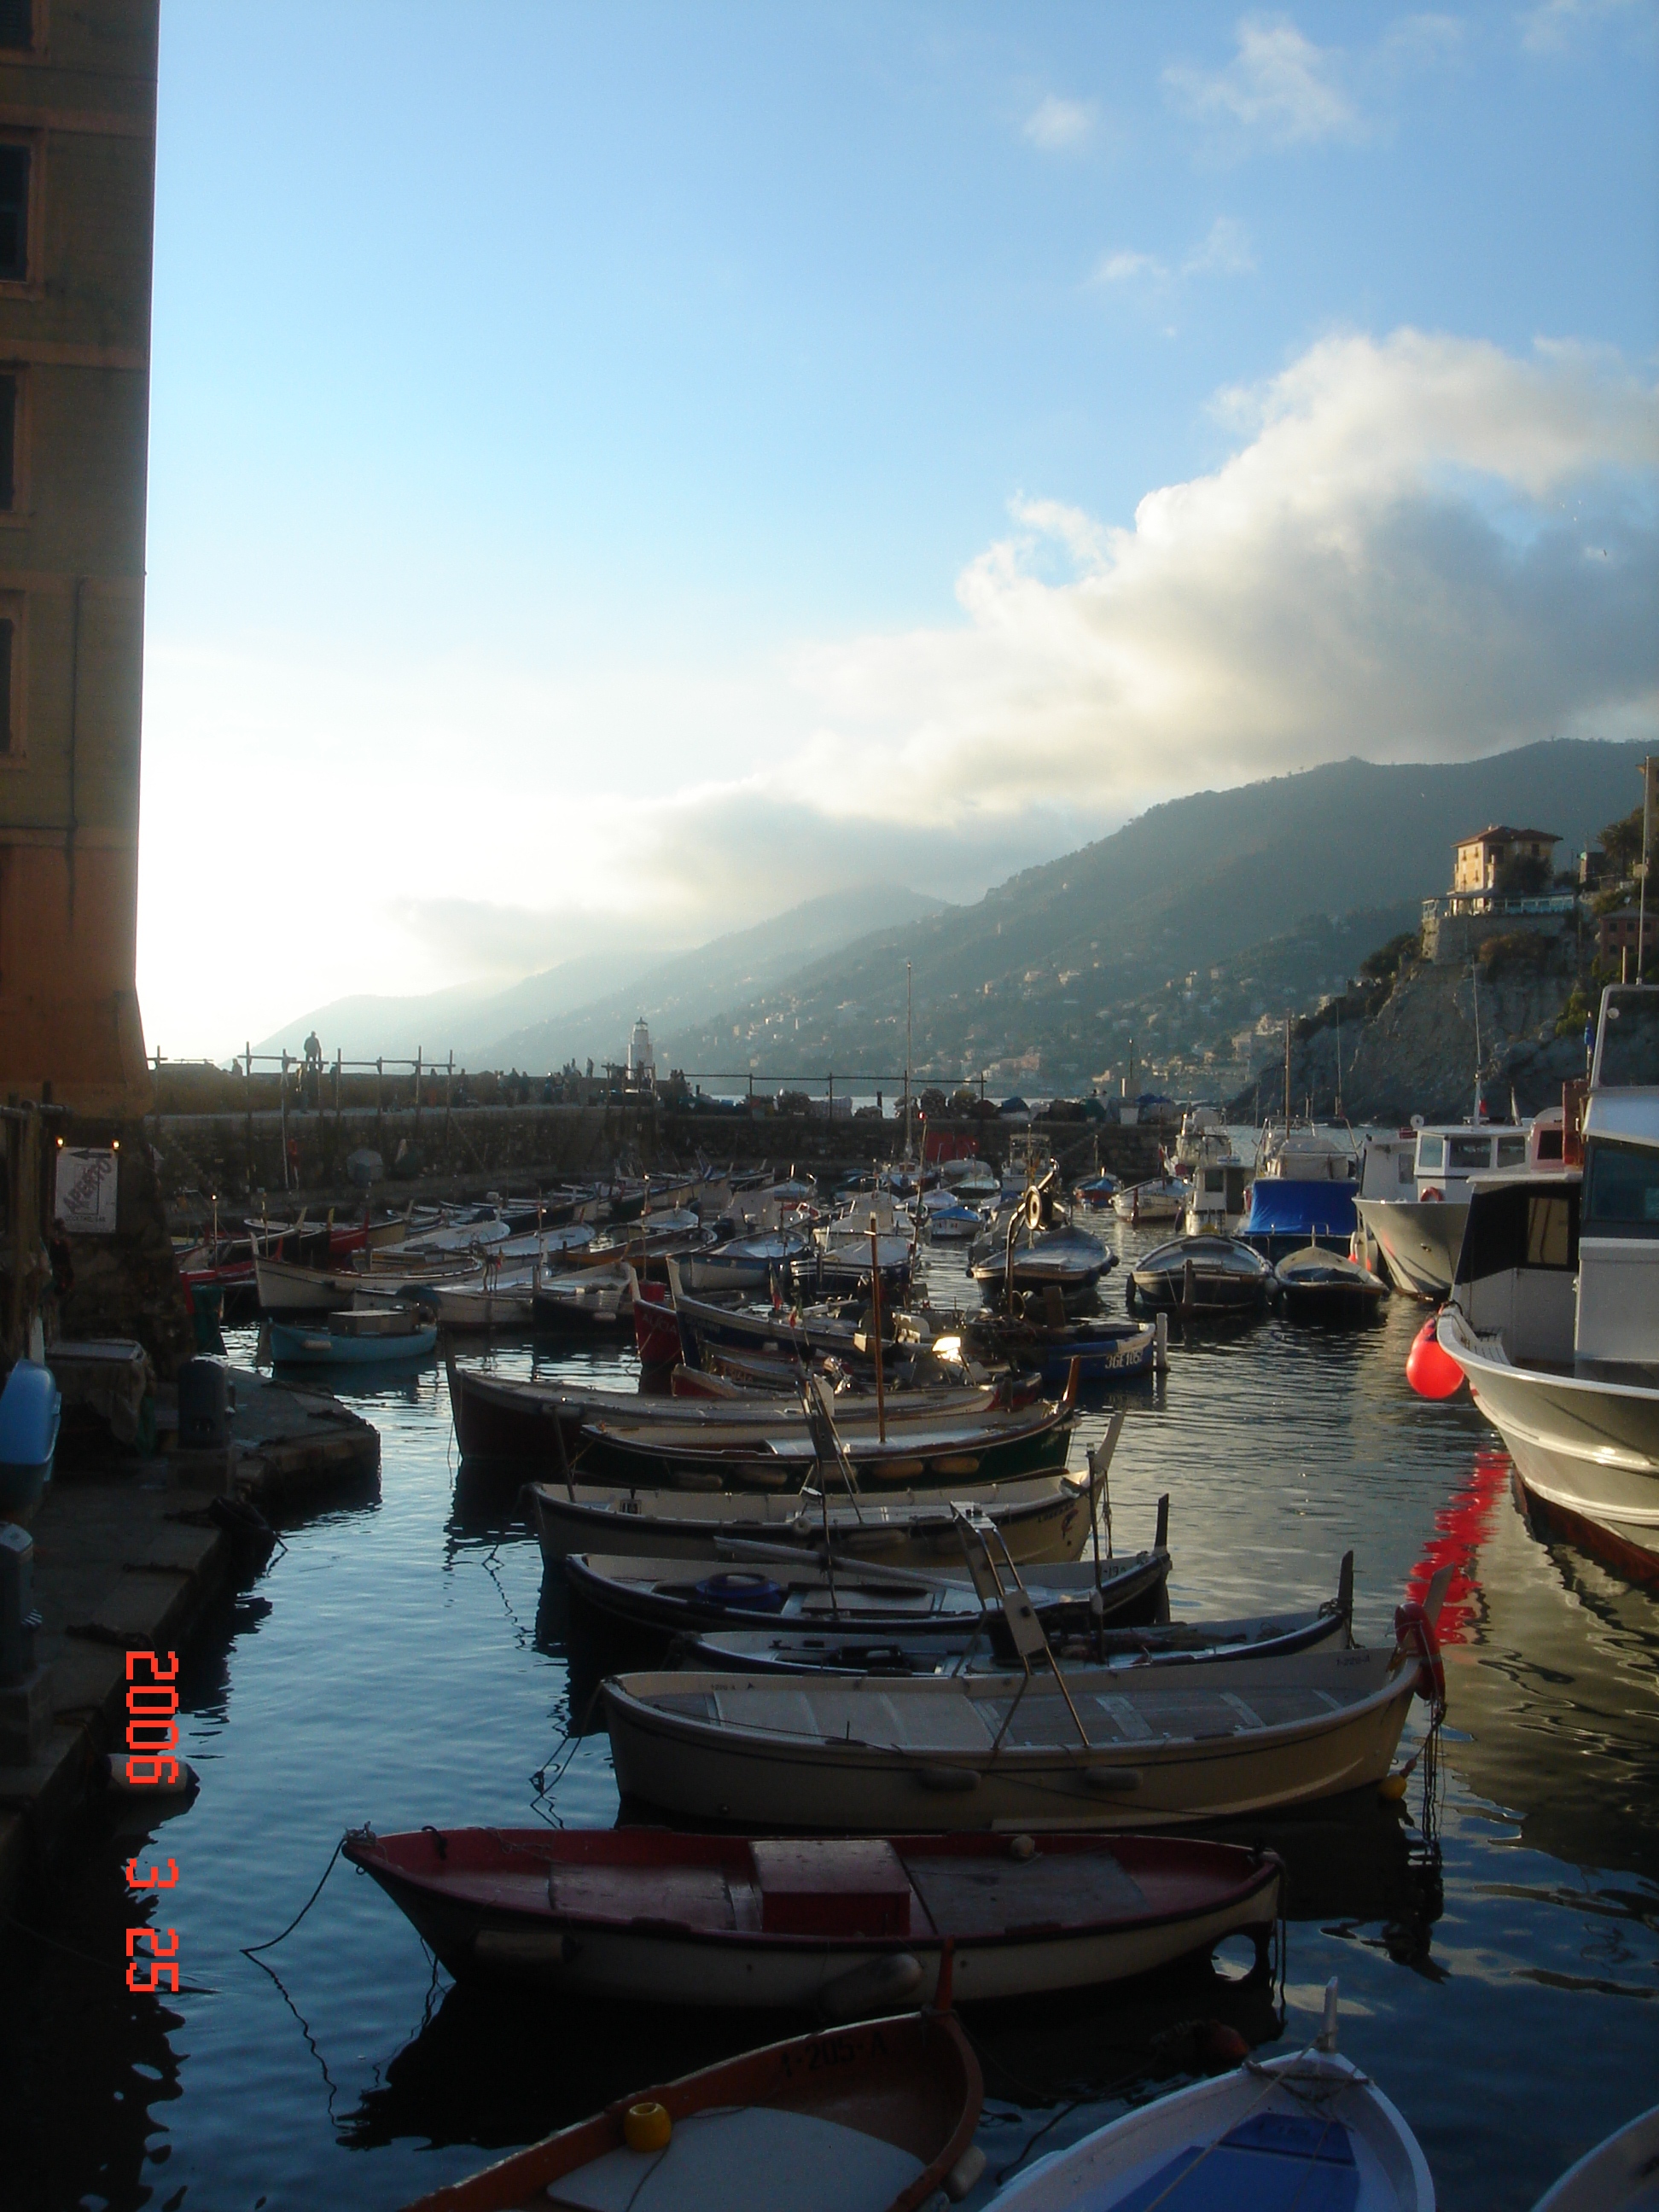 Camogli, en liten stad efter den liguriska kusten i nrheten av La Spezia. En kvllspromenad!